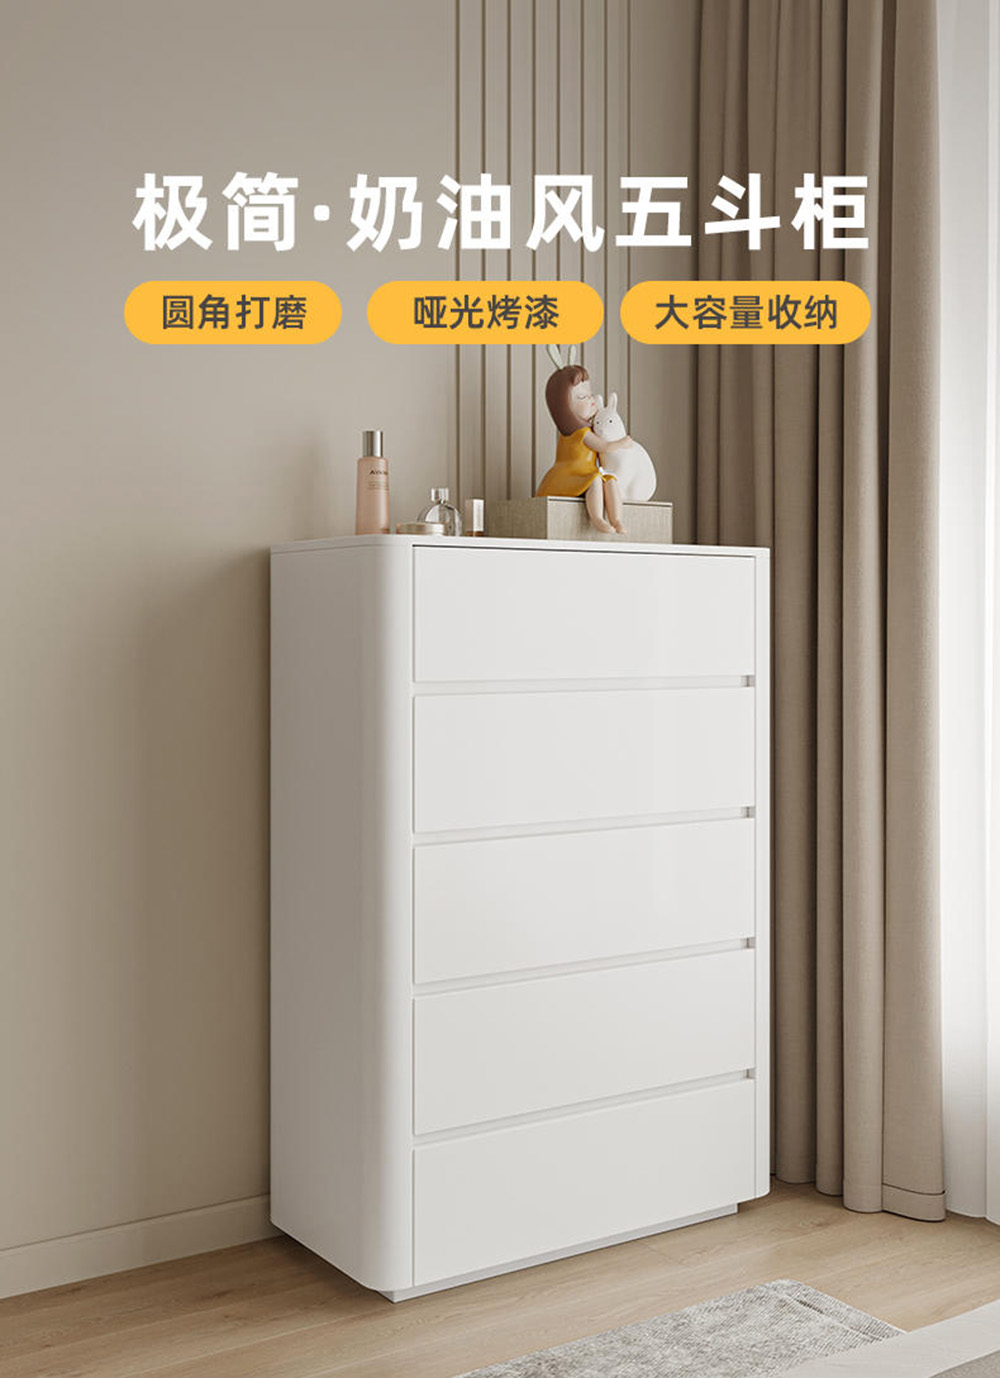 Taoshop 淘家舖 白色烤漆五斗櫃臥室簡約現代抽屜儲物櫃